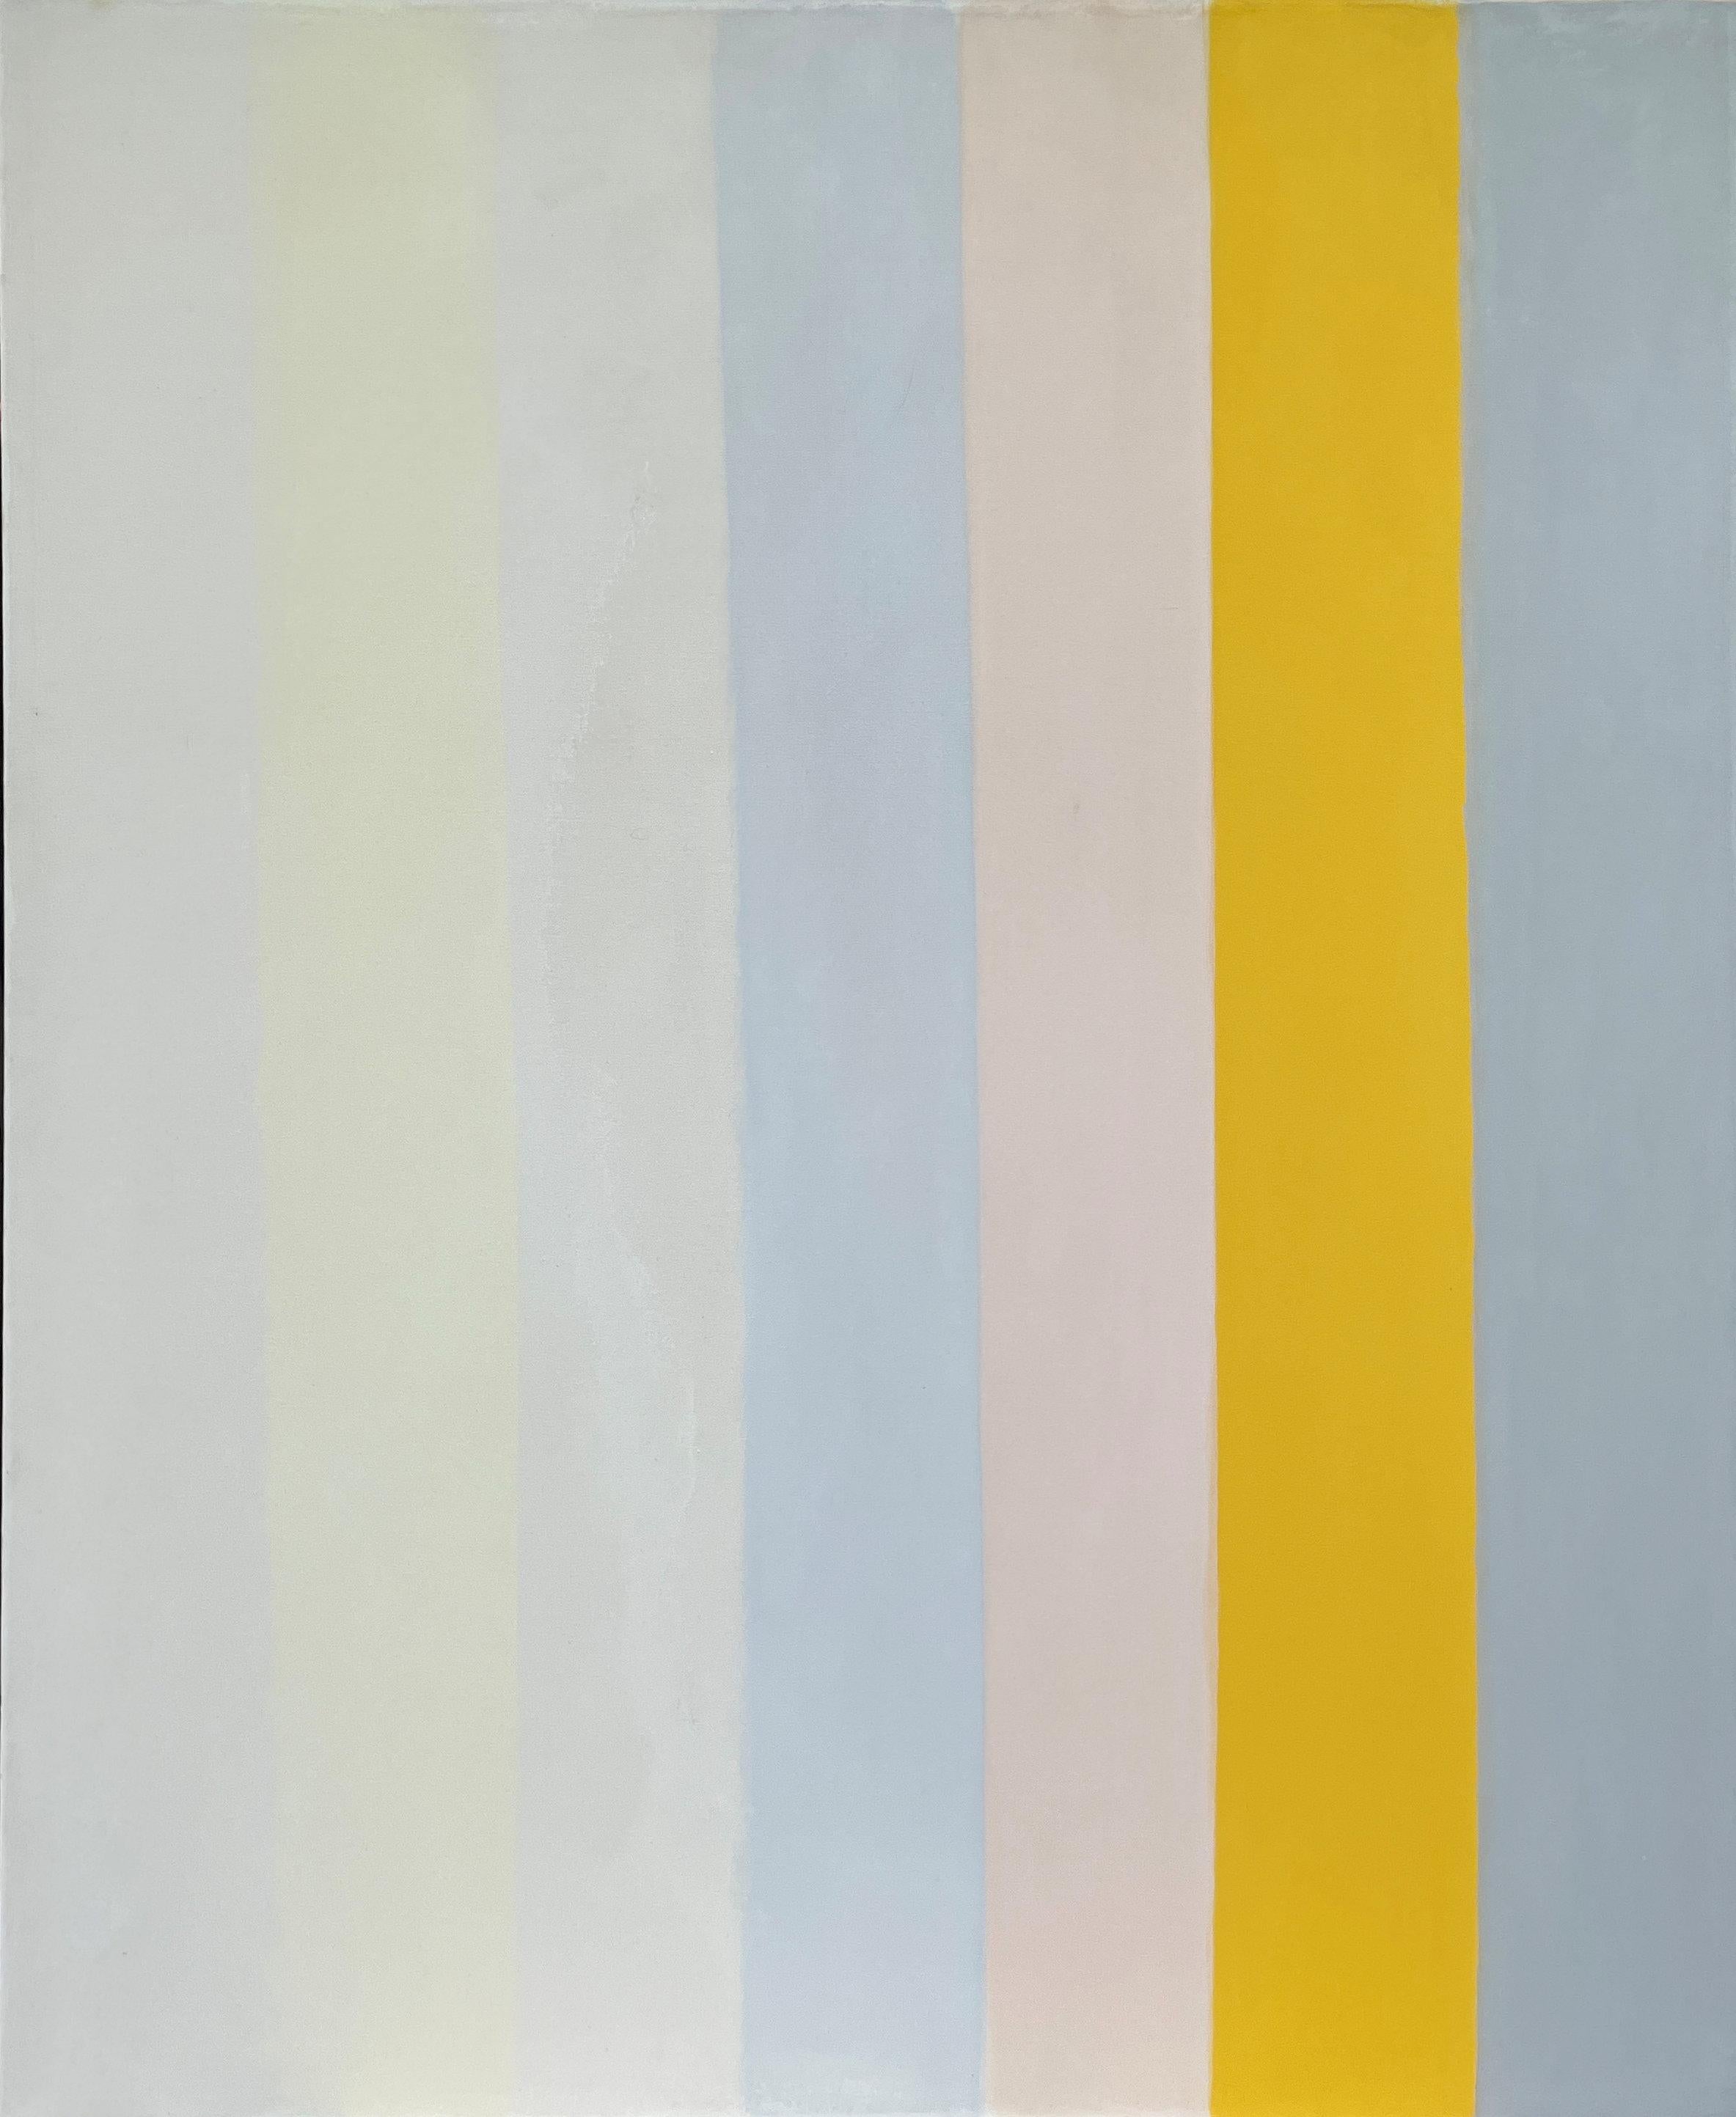 Calvert Coggeshall
Sans titre, vers 1970
Acrylique sur toile
80 x 67 pouces

Calvert Coggeshall a travaillé comme peintre abstrait et décorateur d'intérieur principalement dans le Maine et à New York. De 1951 à 1978, il a exposé régulièrement à la